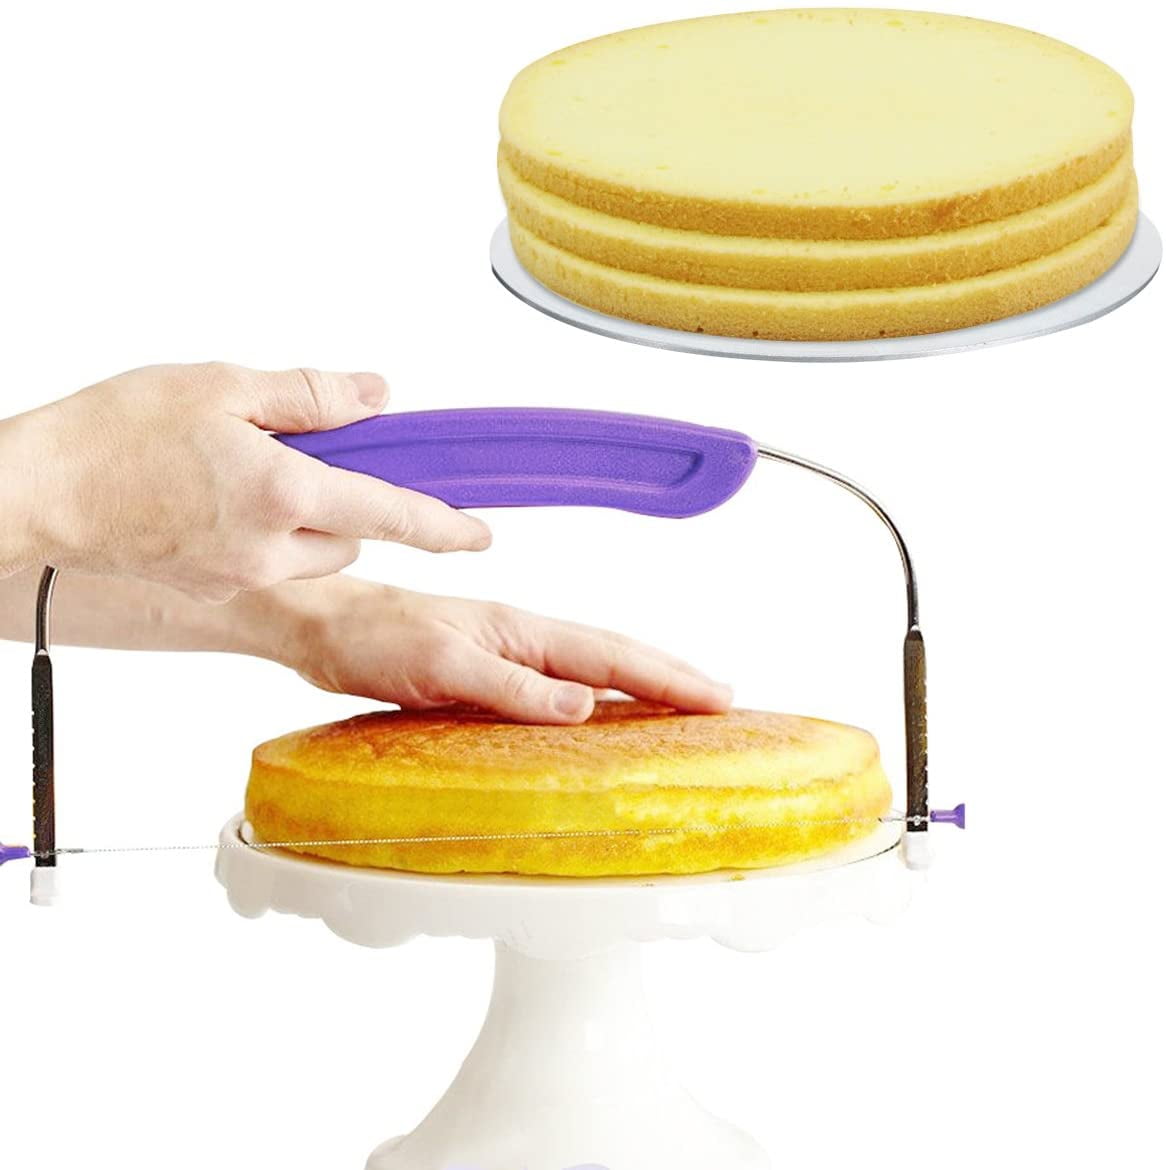  CANDeal Adjustable Layered Cake Slicer leveler,6-8